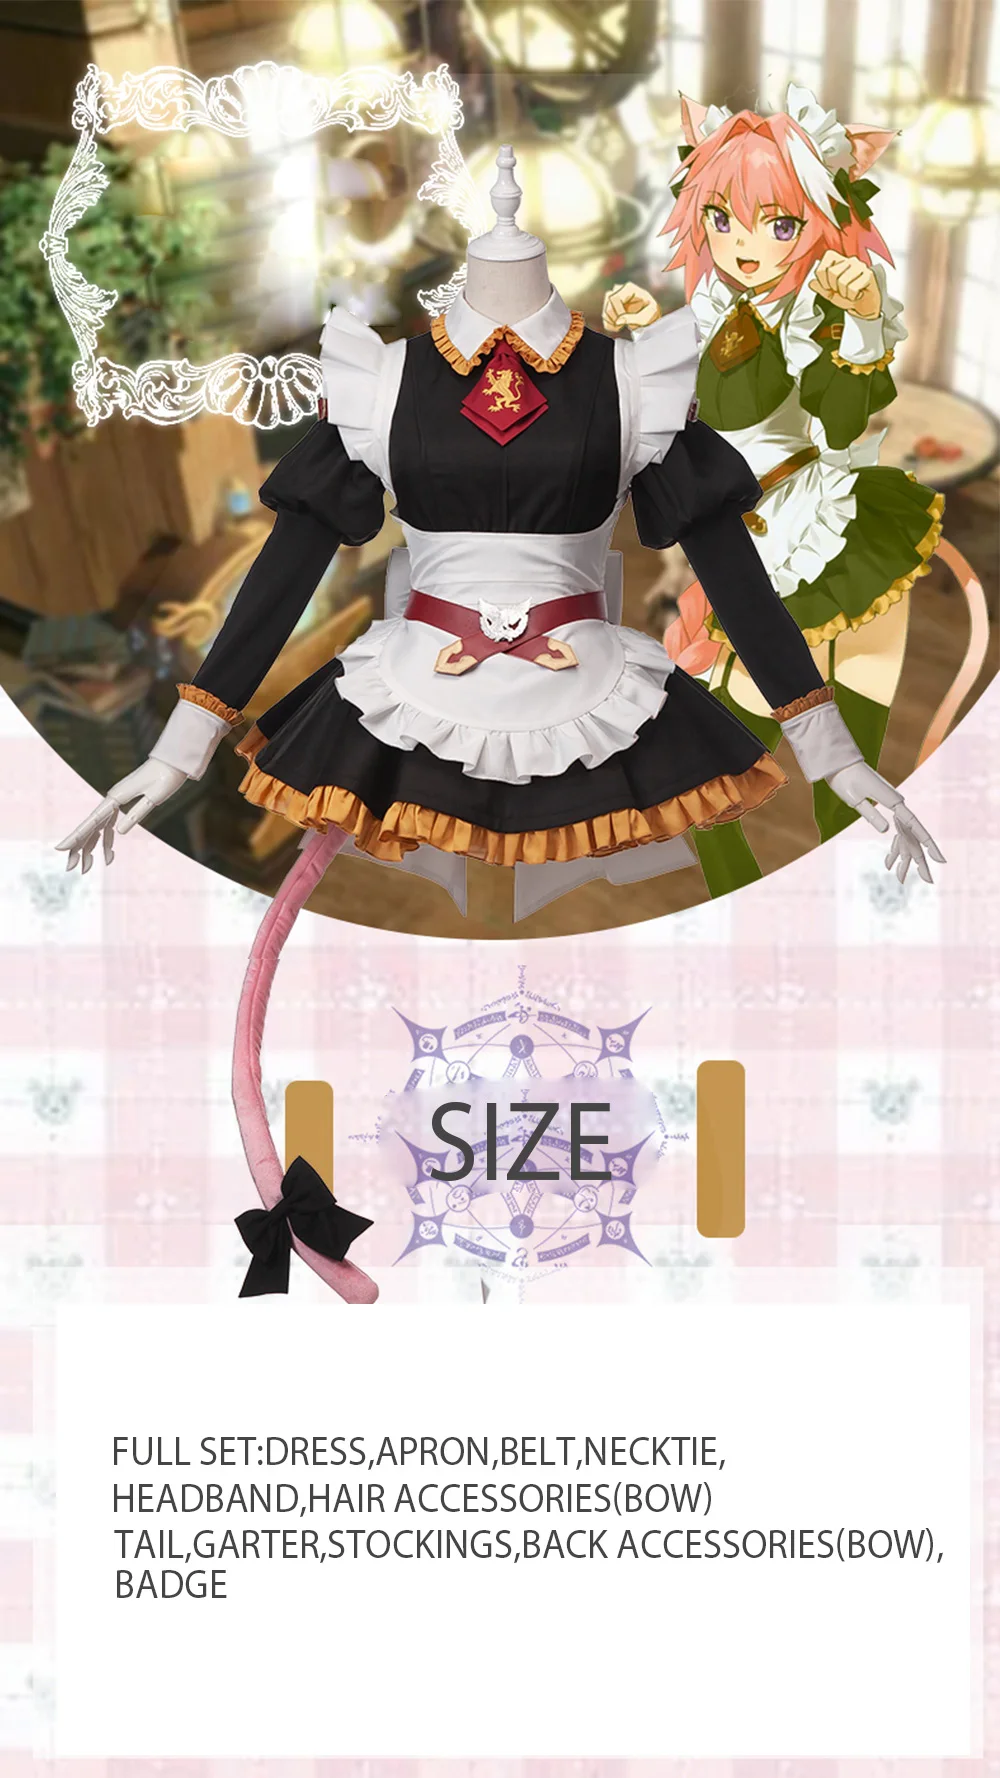 Докидоки игра Fate Grand Order Униформа горничной астольфо Косплей Костюм Fate/Apocrypha косплей Женский костюм на Хэллоуин